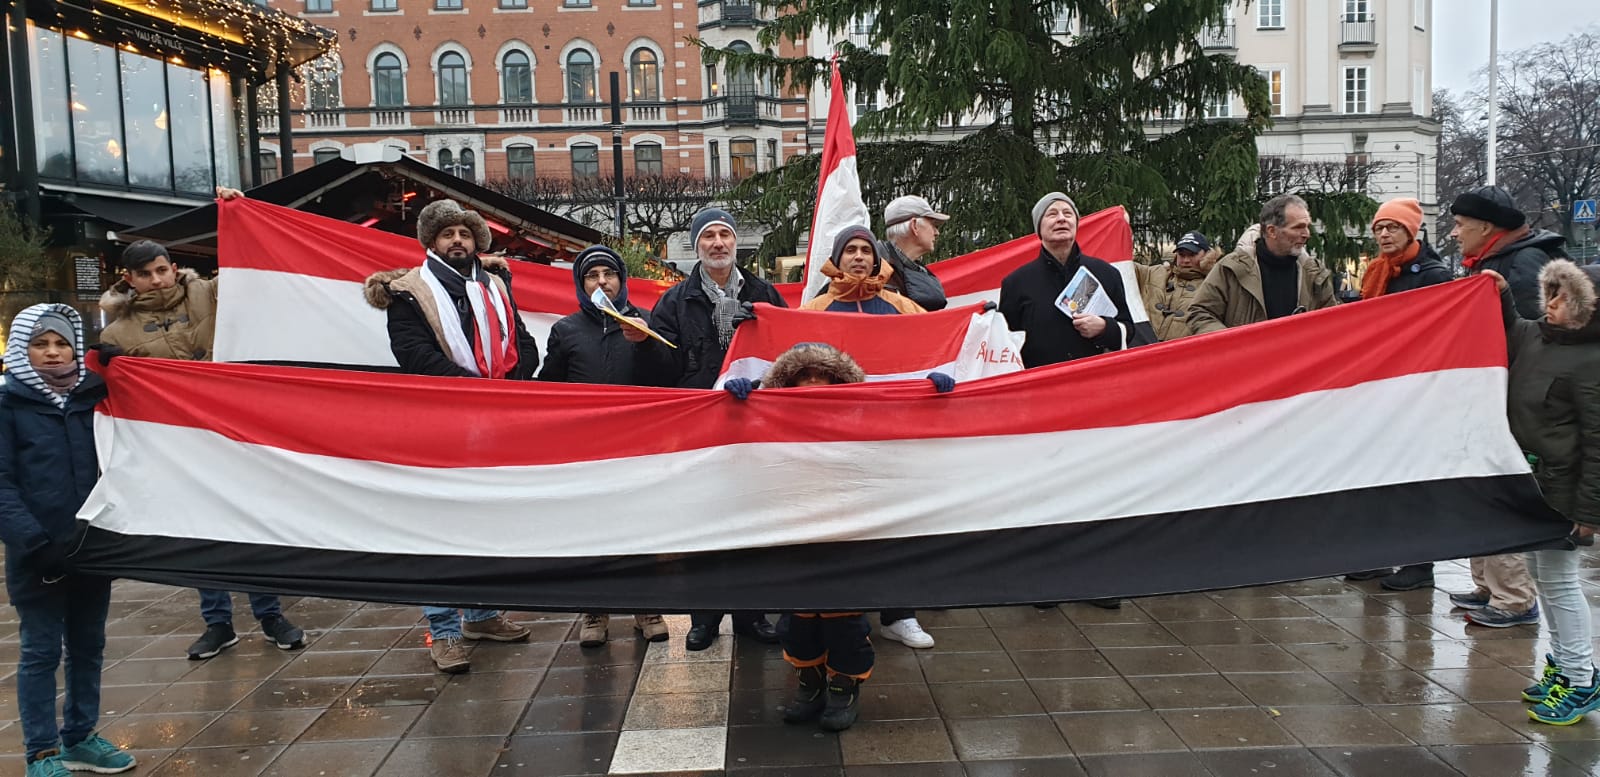 JemenSolidaritet på Norrmalmstorg 18 dec 2018